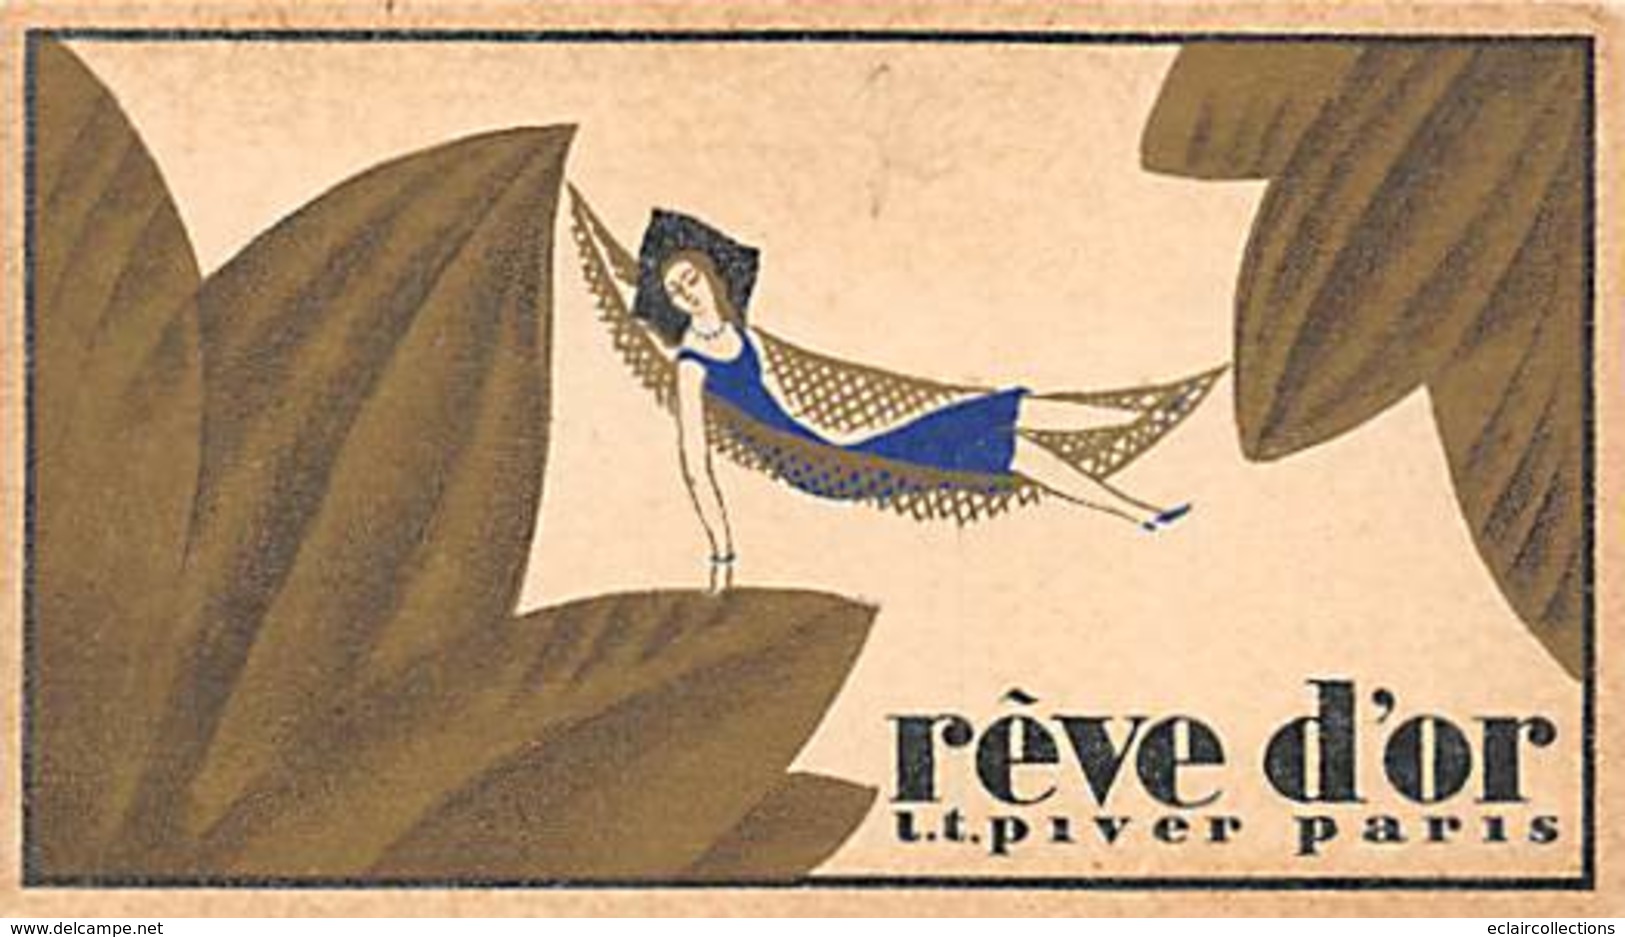 Thème Publicité :  Autour du Parfum.  7 mini cartes calendriers 1933/34 Parfumées  Rêve d'Or Paris 9x5 cm (voir scan)